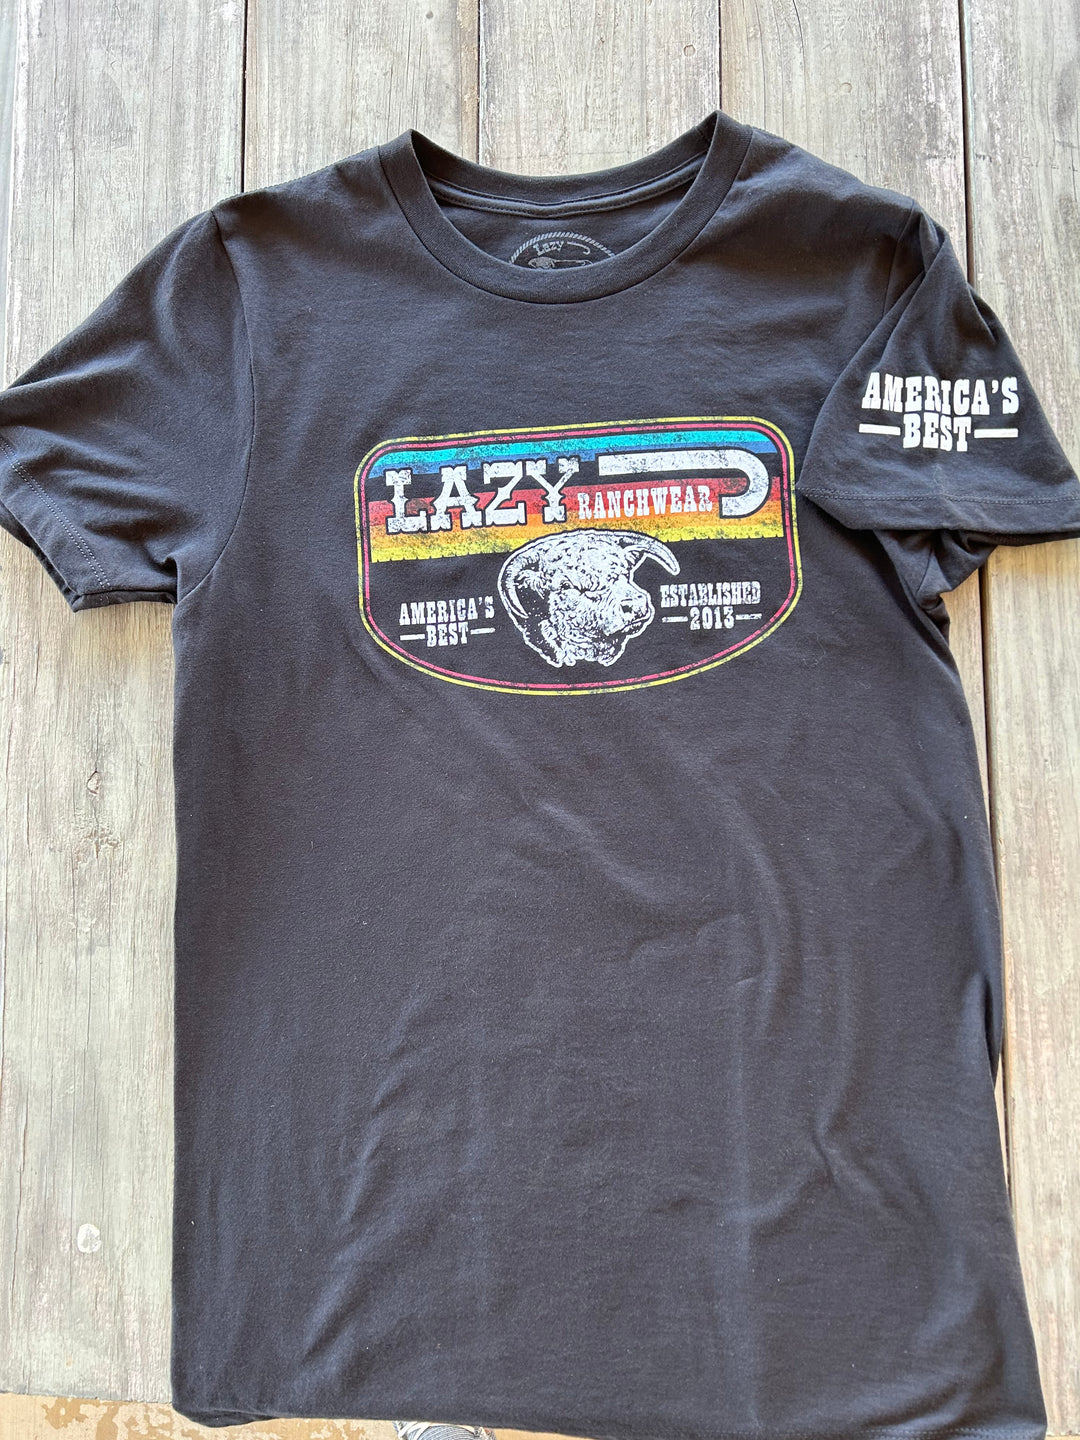 Lazy J Ranch Wear America's Best T-Shirt - Black Serape